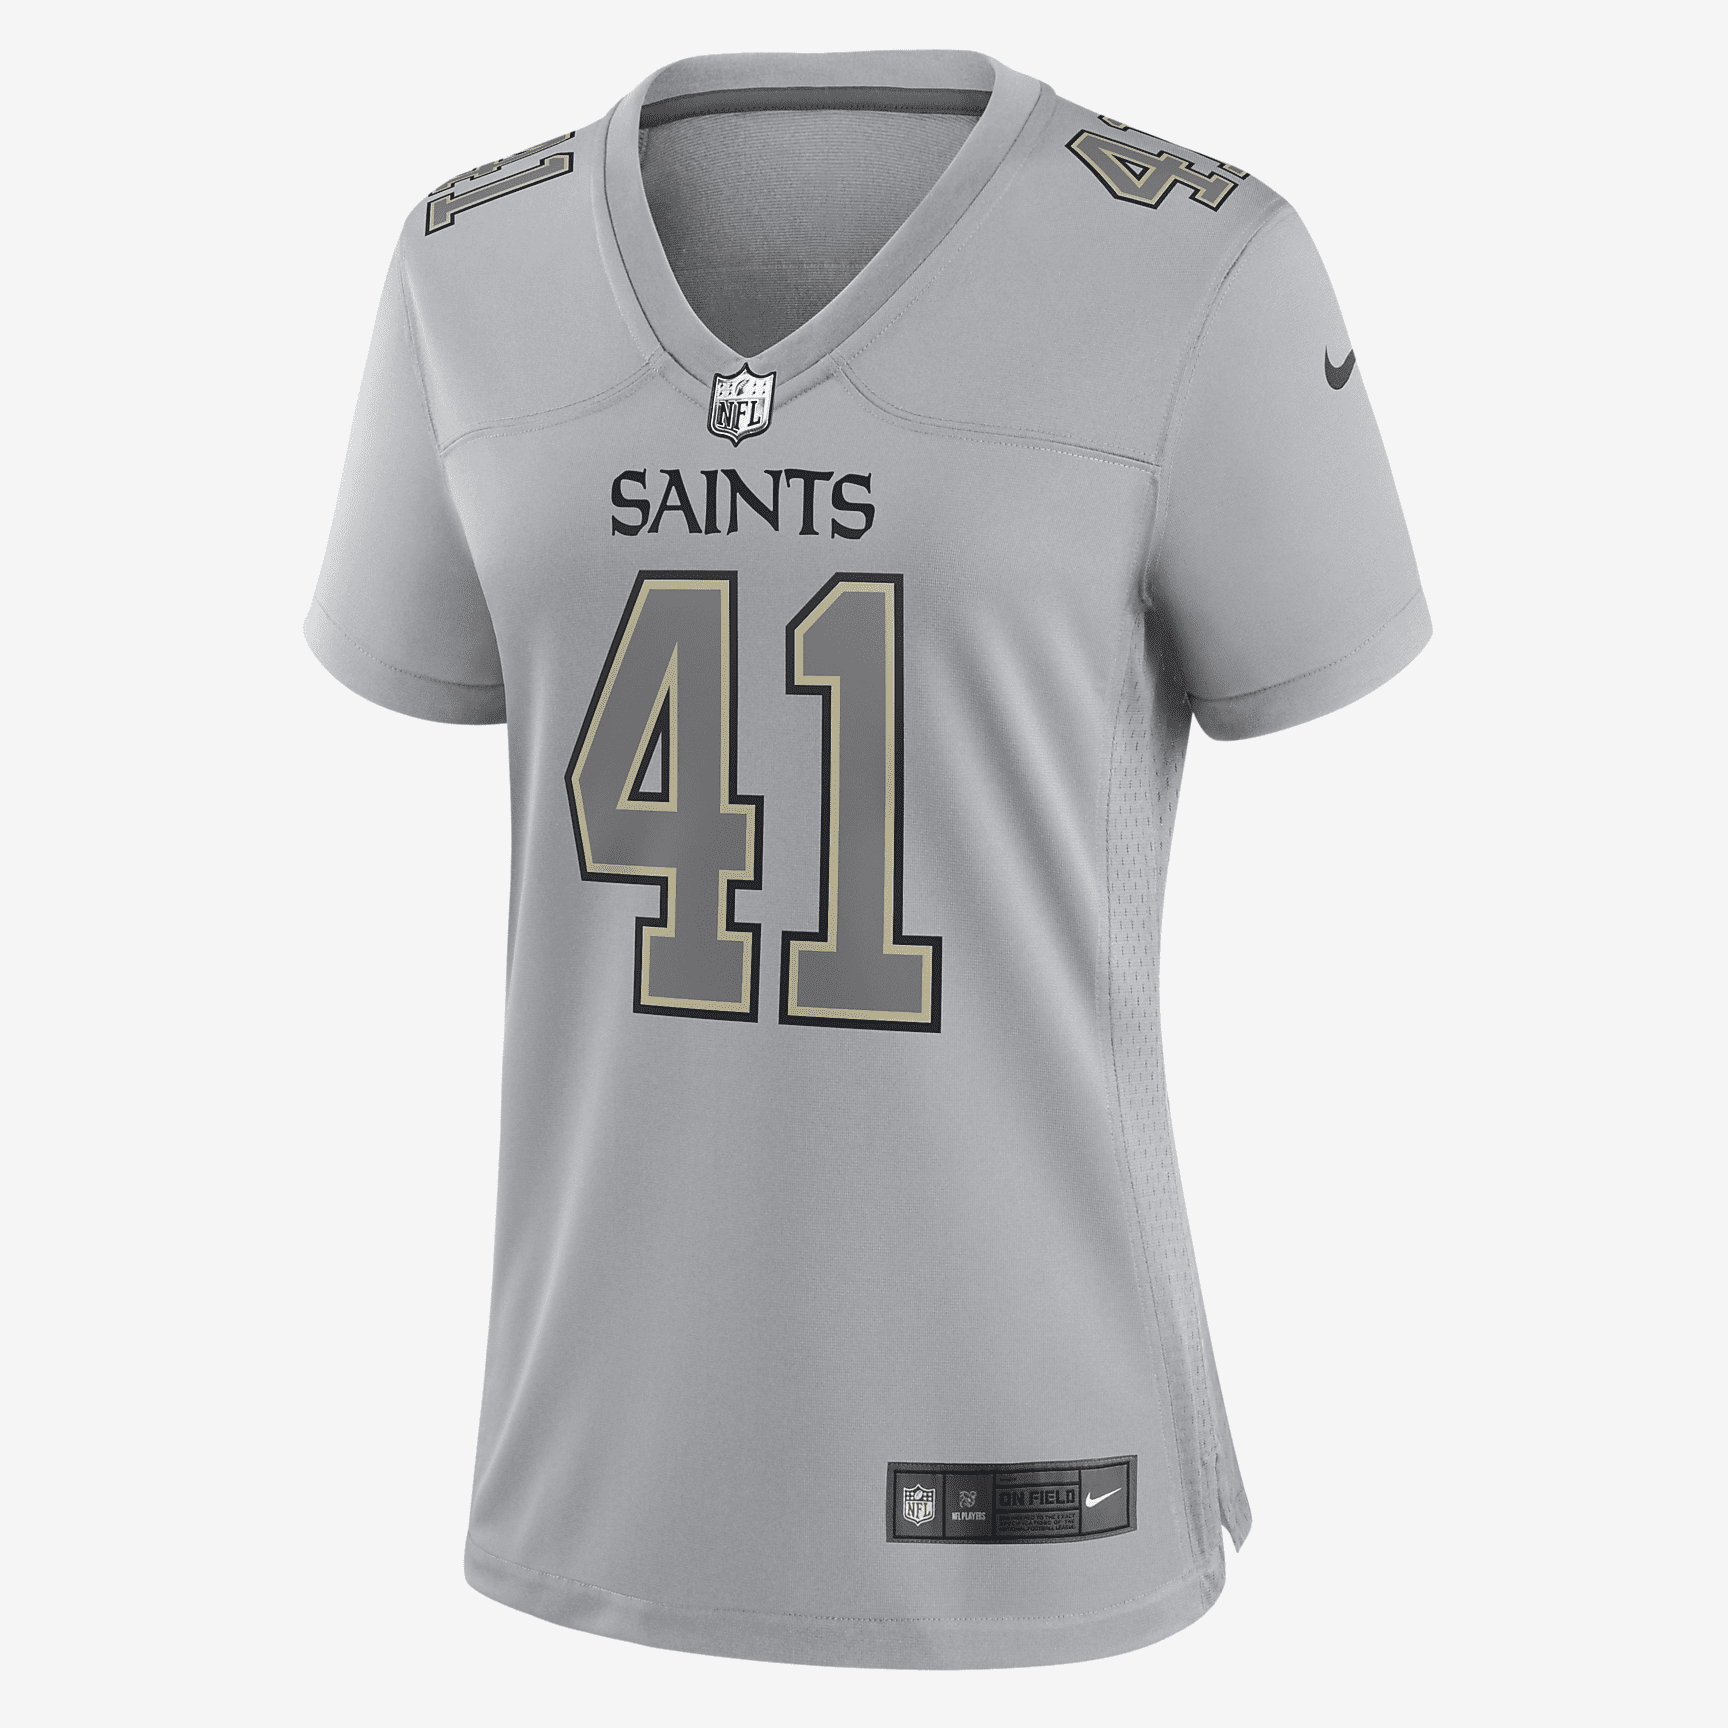 New Orleans Saints Jerseys in New Orleans Saints Team Shop